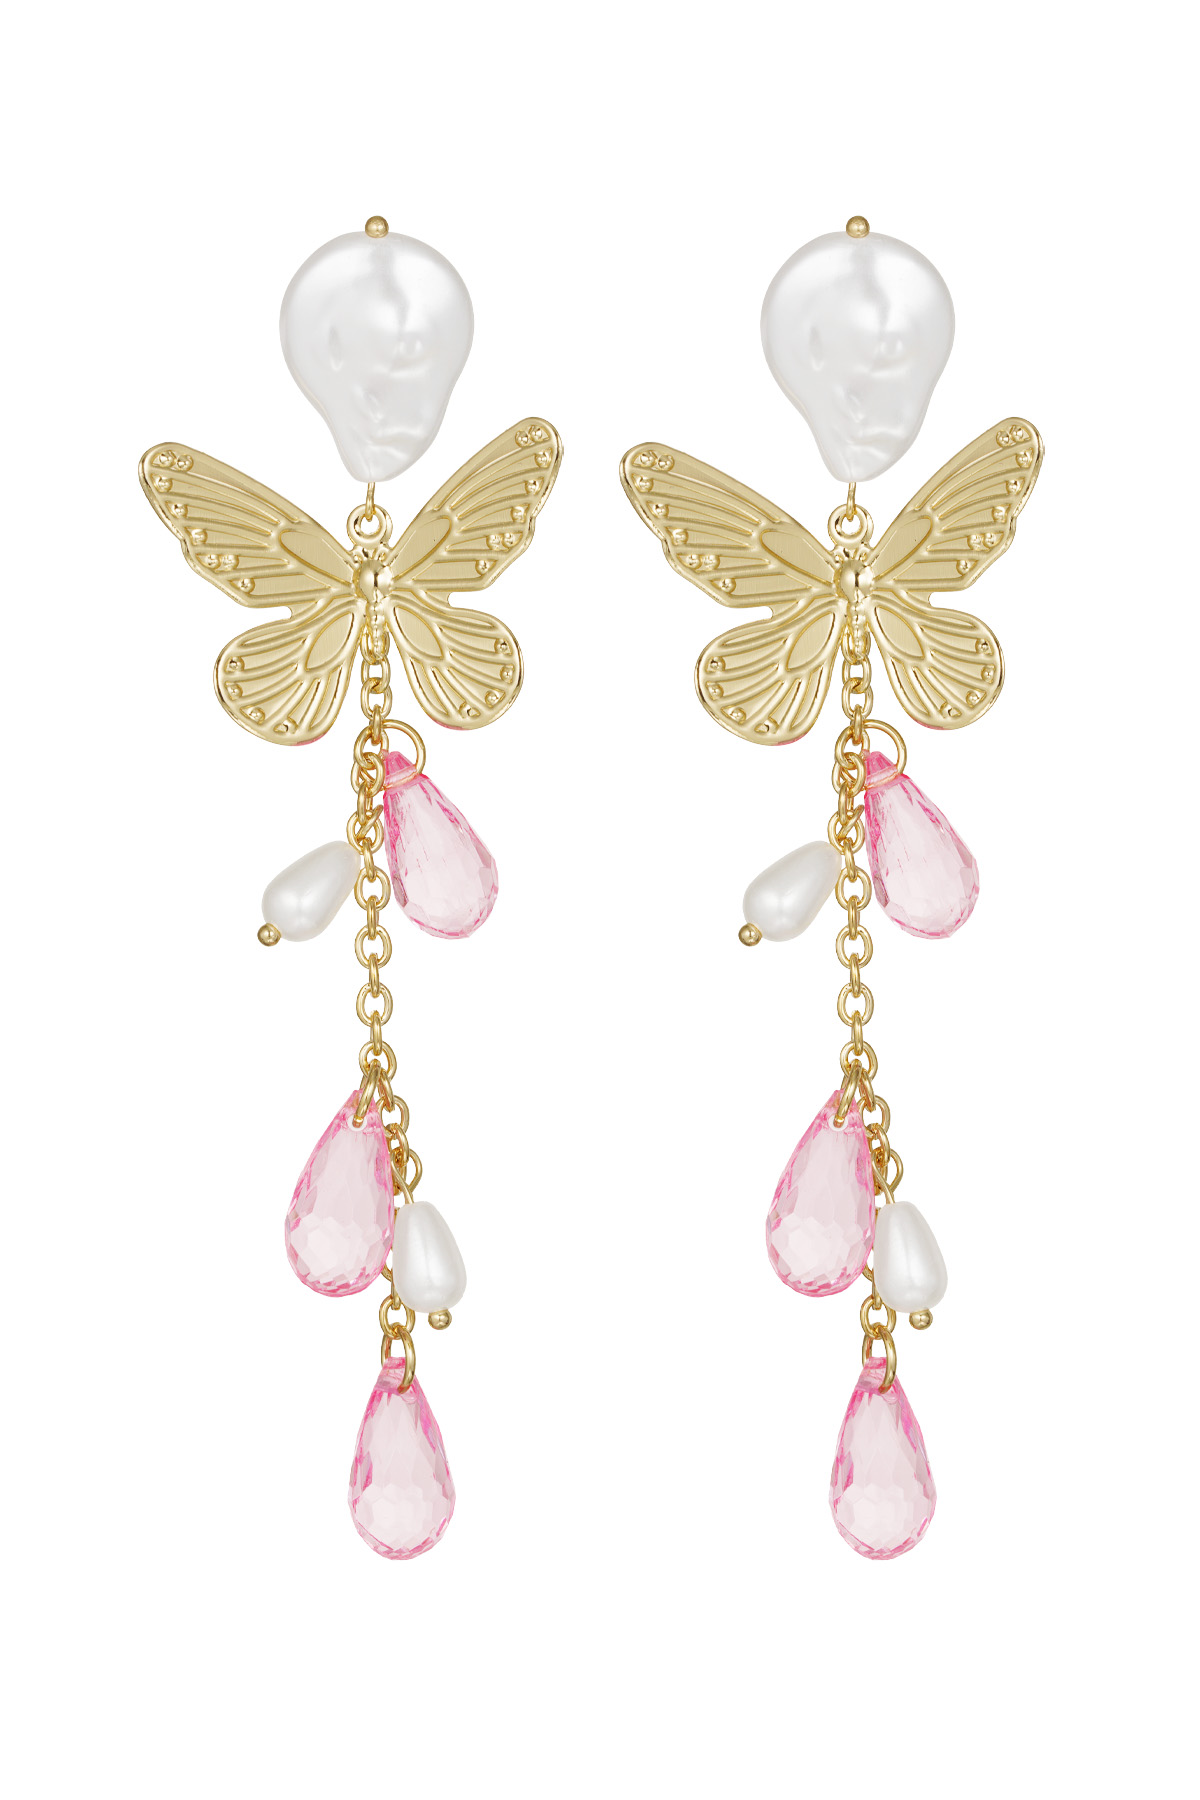 Butterfly earrings - pink